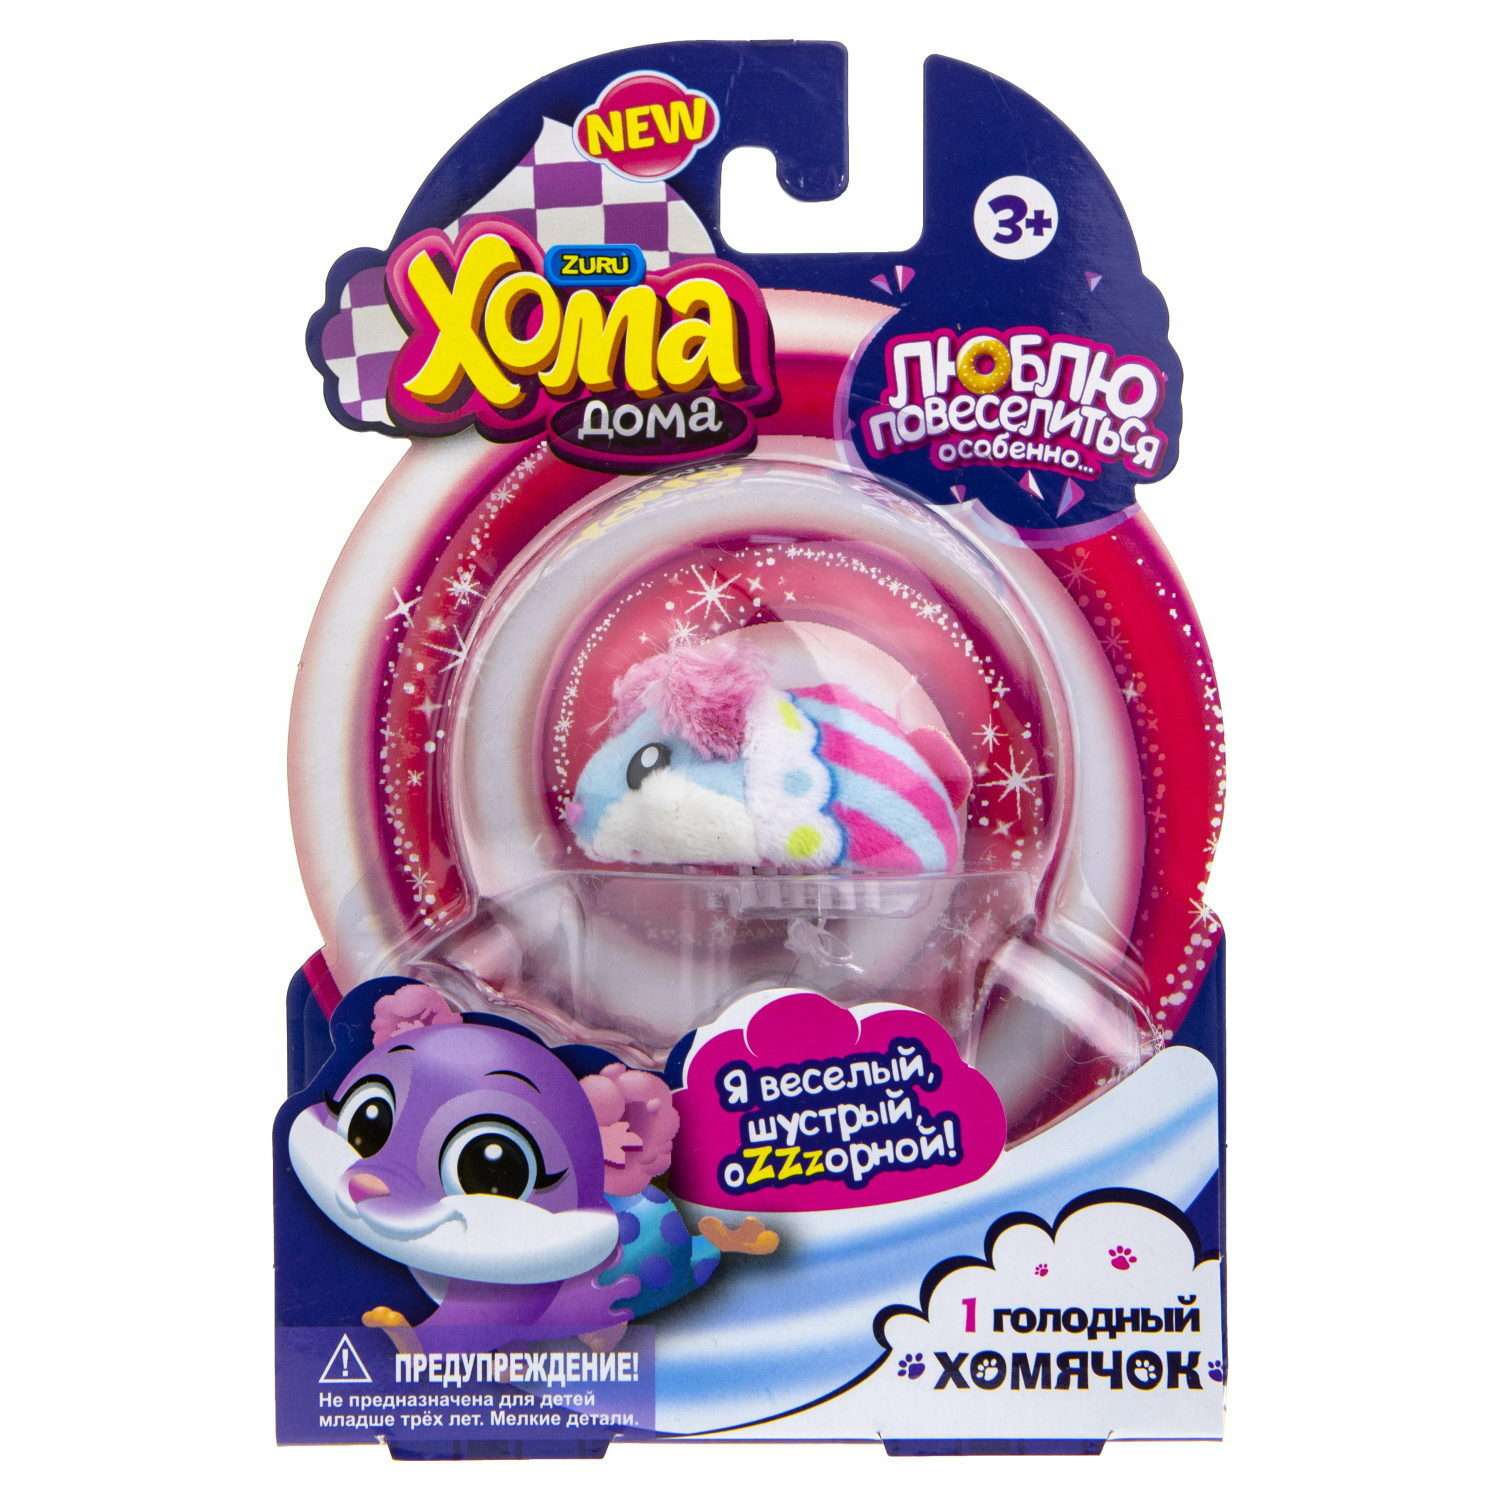 Интерактивная игрушка Хома Дома хомячок Дуняша голубо-розовый в полоску - фото 4